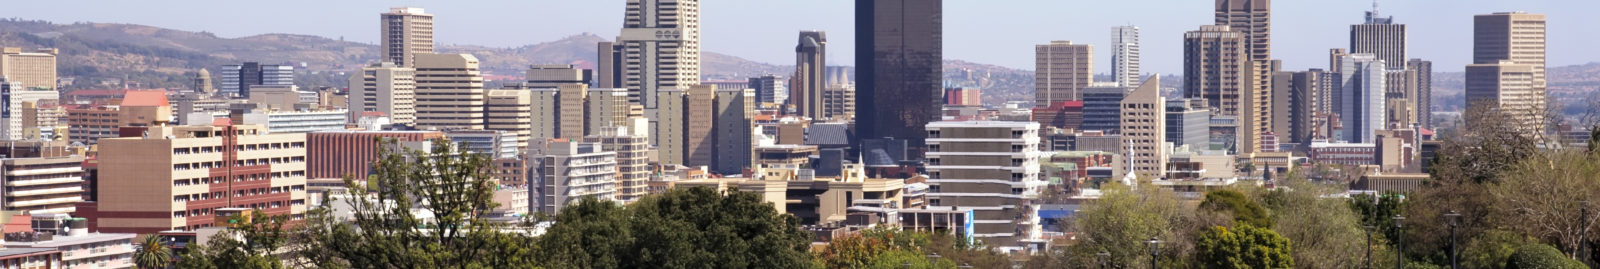 Pretoria Skyline South Africa